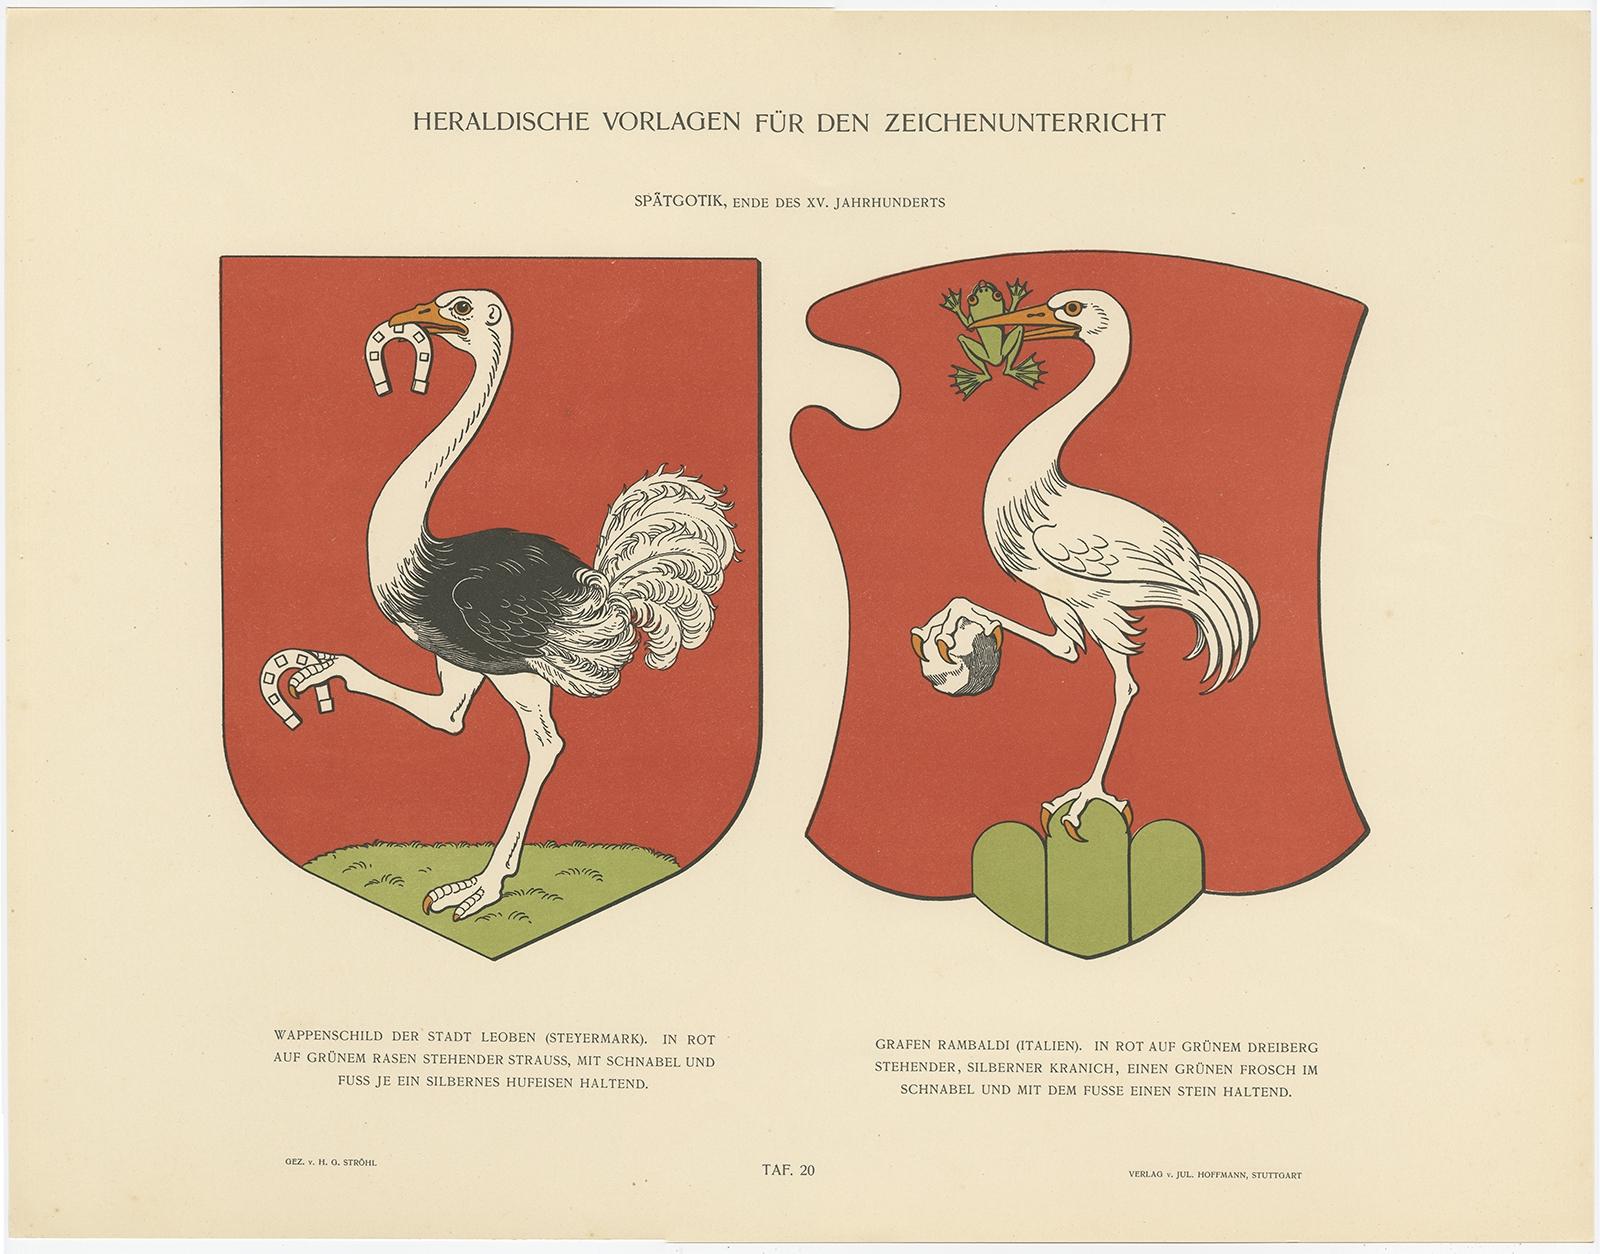 Antique coat of arms titled 'Wappenschild der Stadt Leoben (..)'. 

Antique print depicting the coat of arms of Leoben (Steiermark, Austria) and Count Rambaldi (Italy). Originates from 'Heraldische Vorlagen für den Zeichenunterricht'. 

Artists